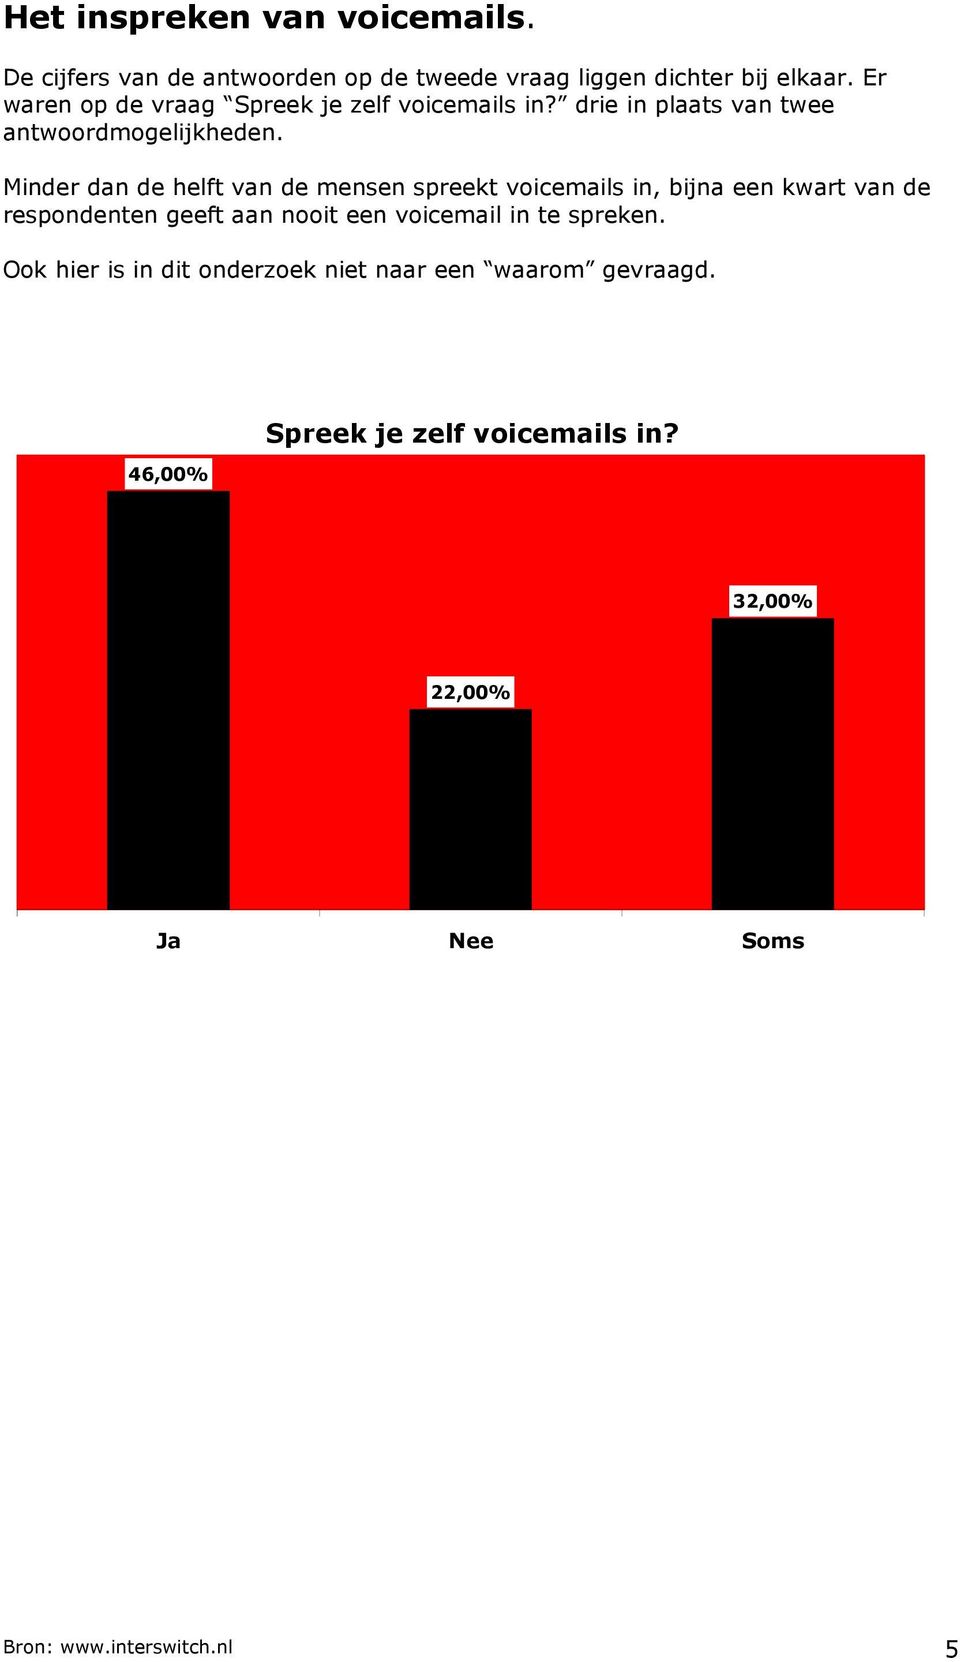 Minder dan de helft van de mensen spreekt voicemails in, bijna een kwart van de respondenten geeft aan nooit een voicemail